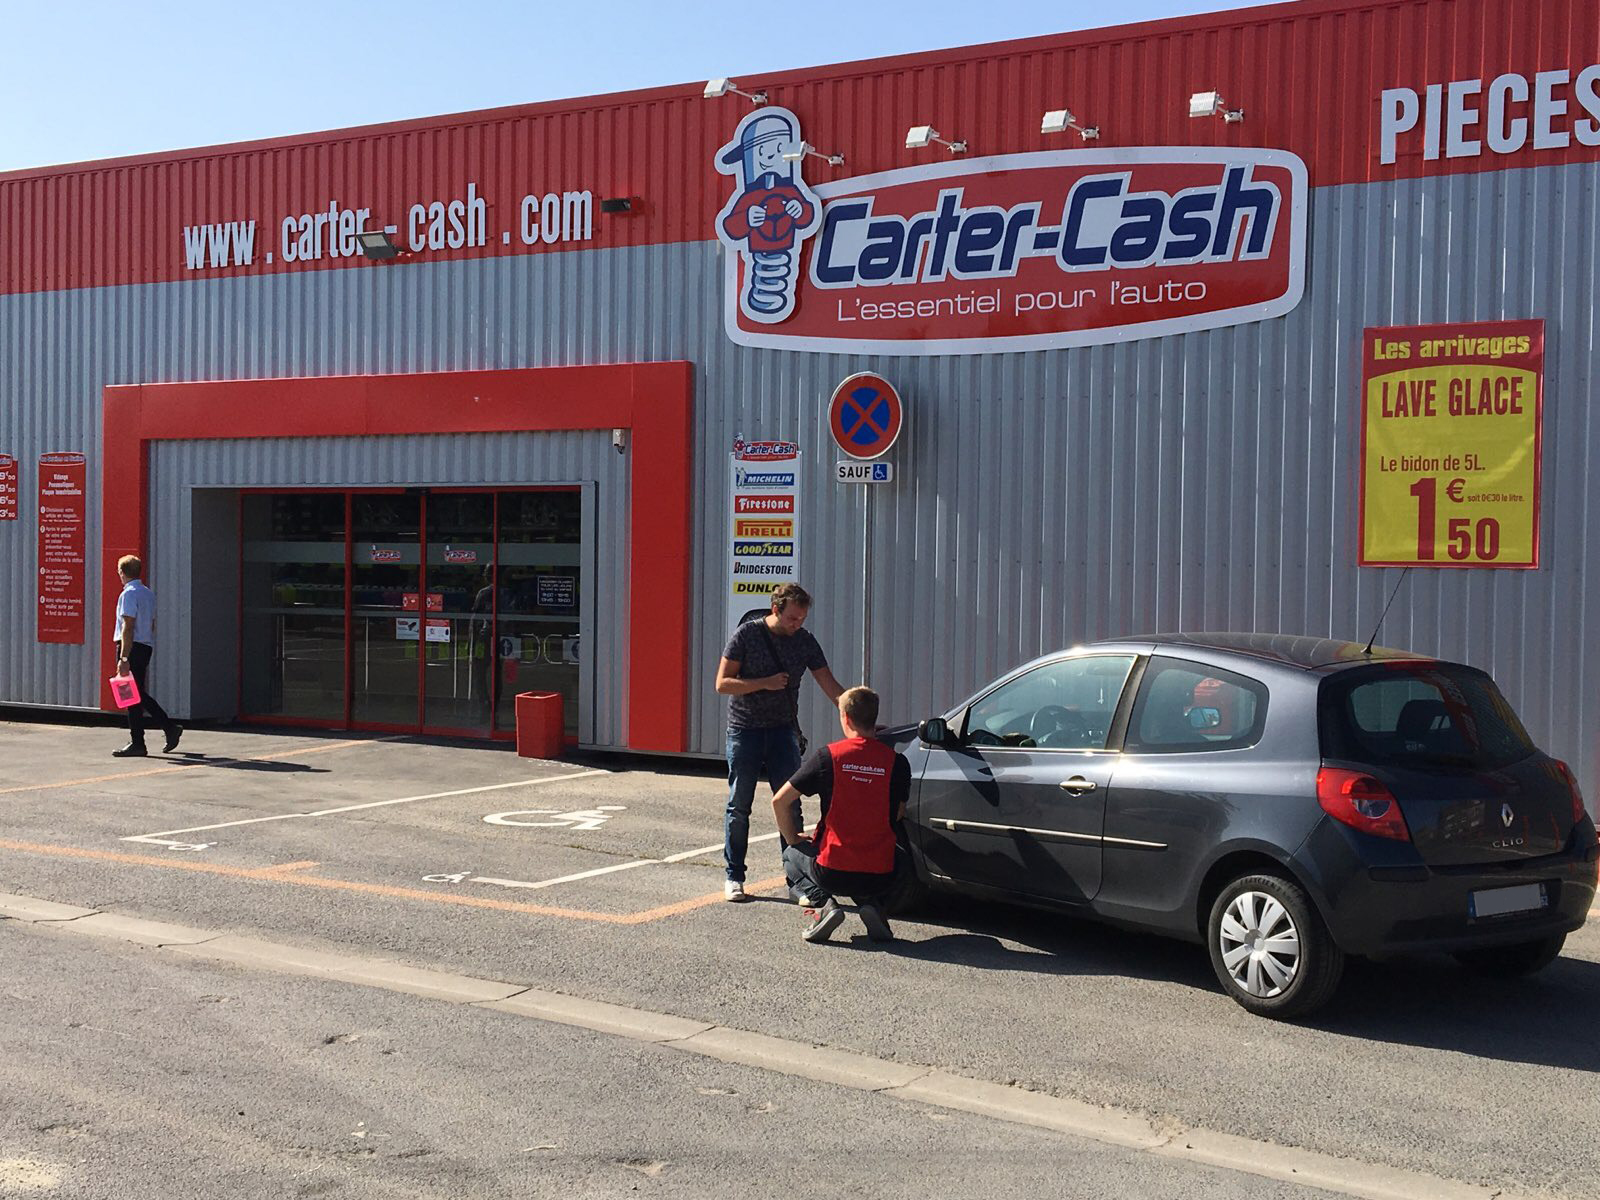 La réparation d'une crevaison chez Carter-Cash - Le Blog de Carter